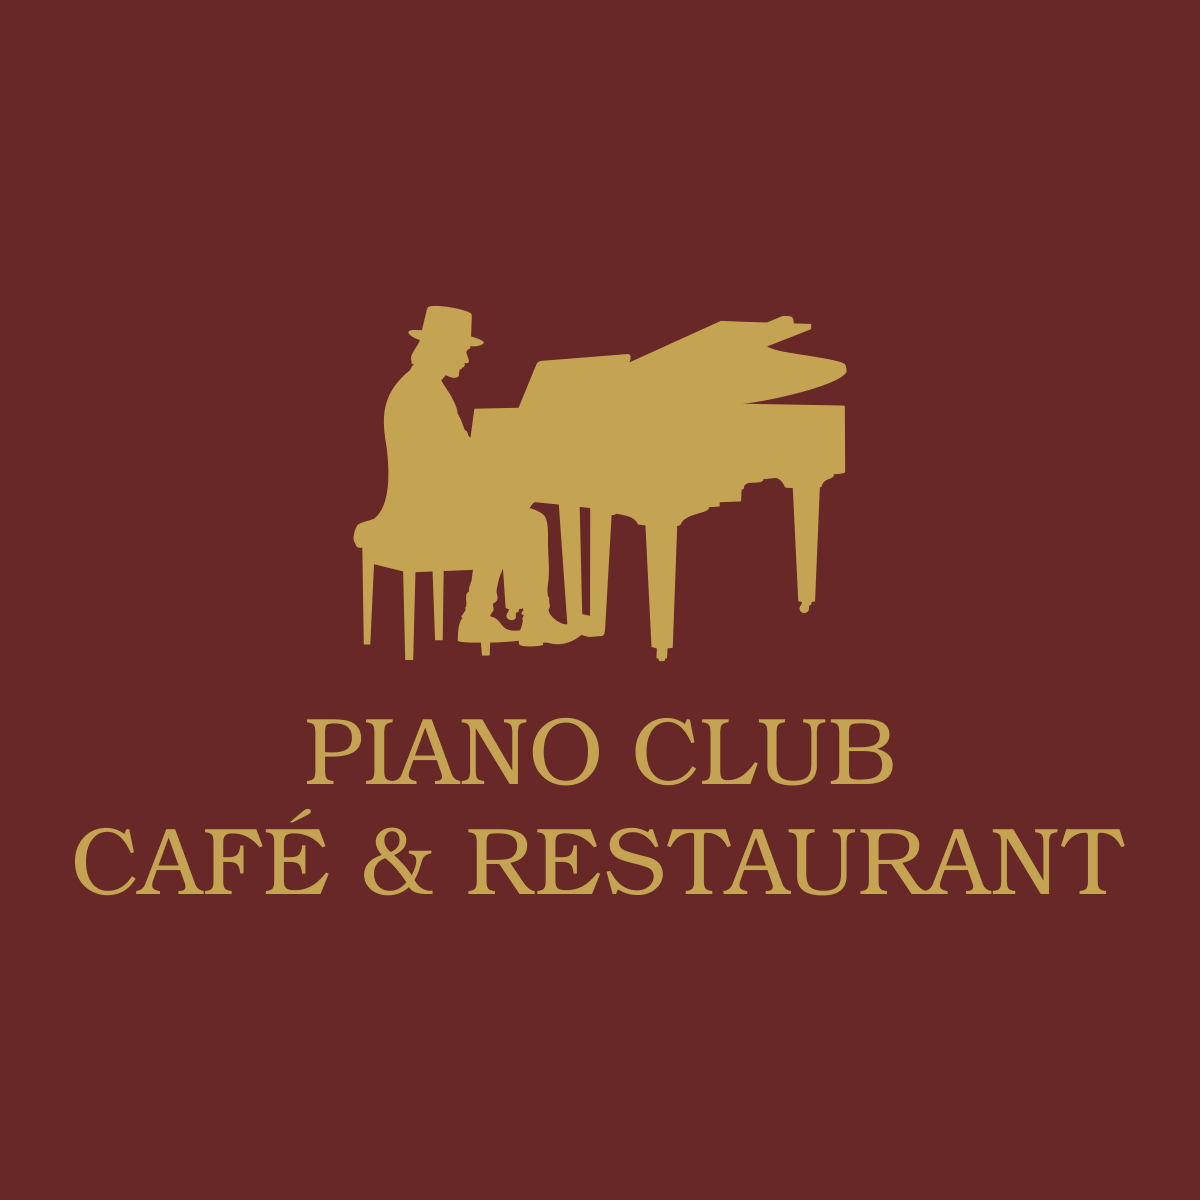 PIANO CLUB CAFÉ